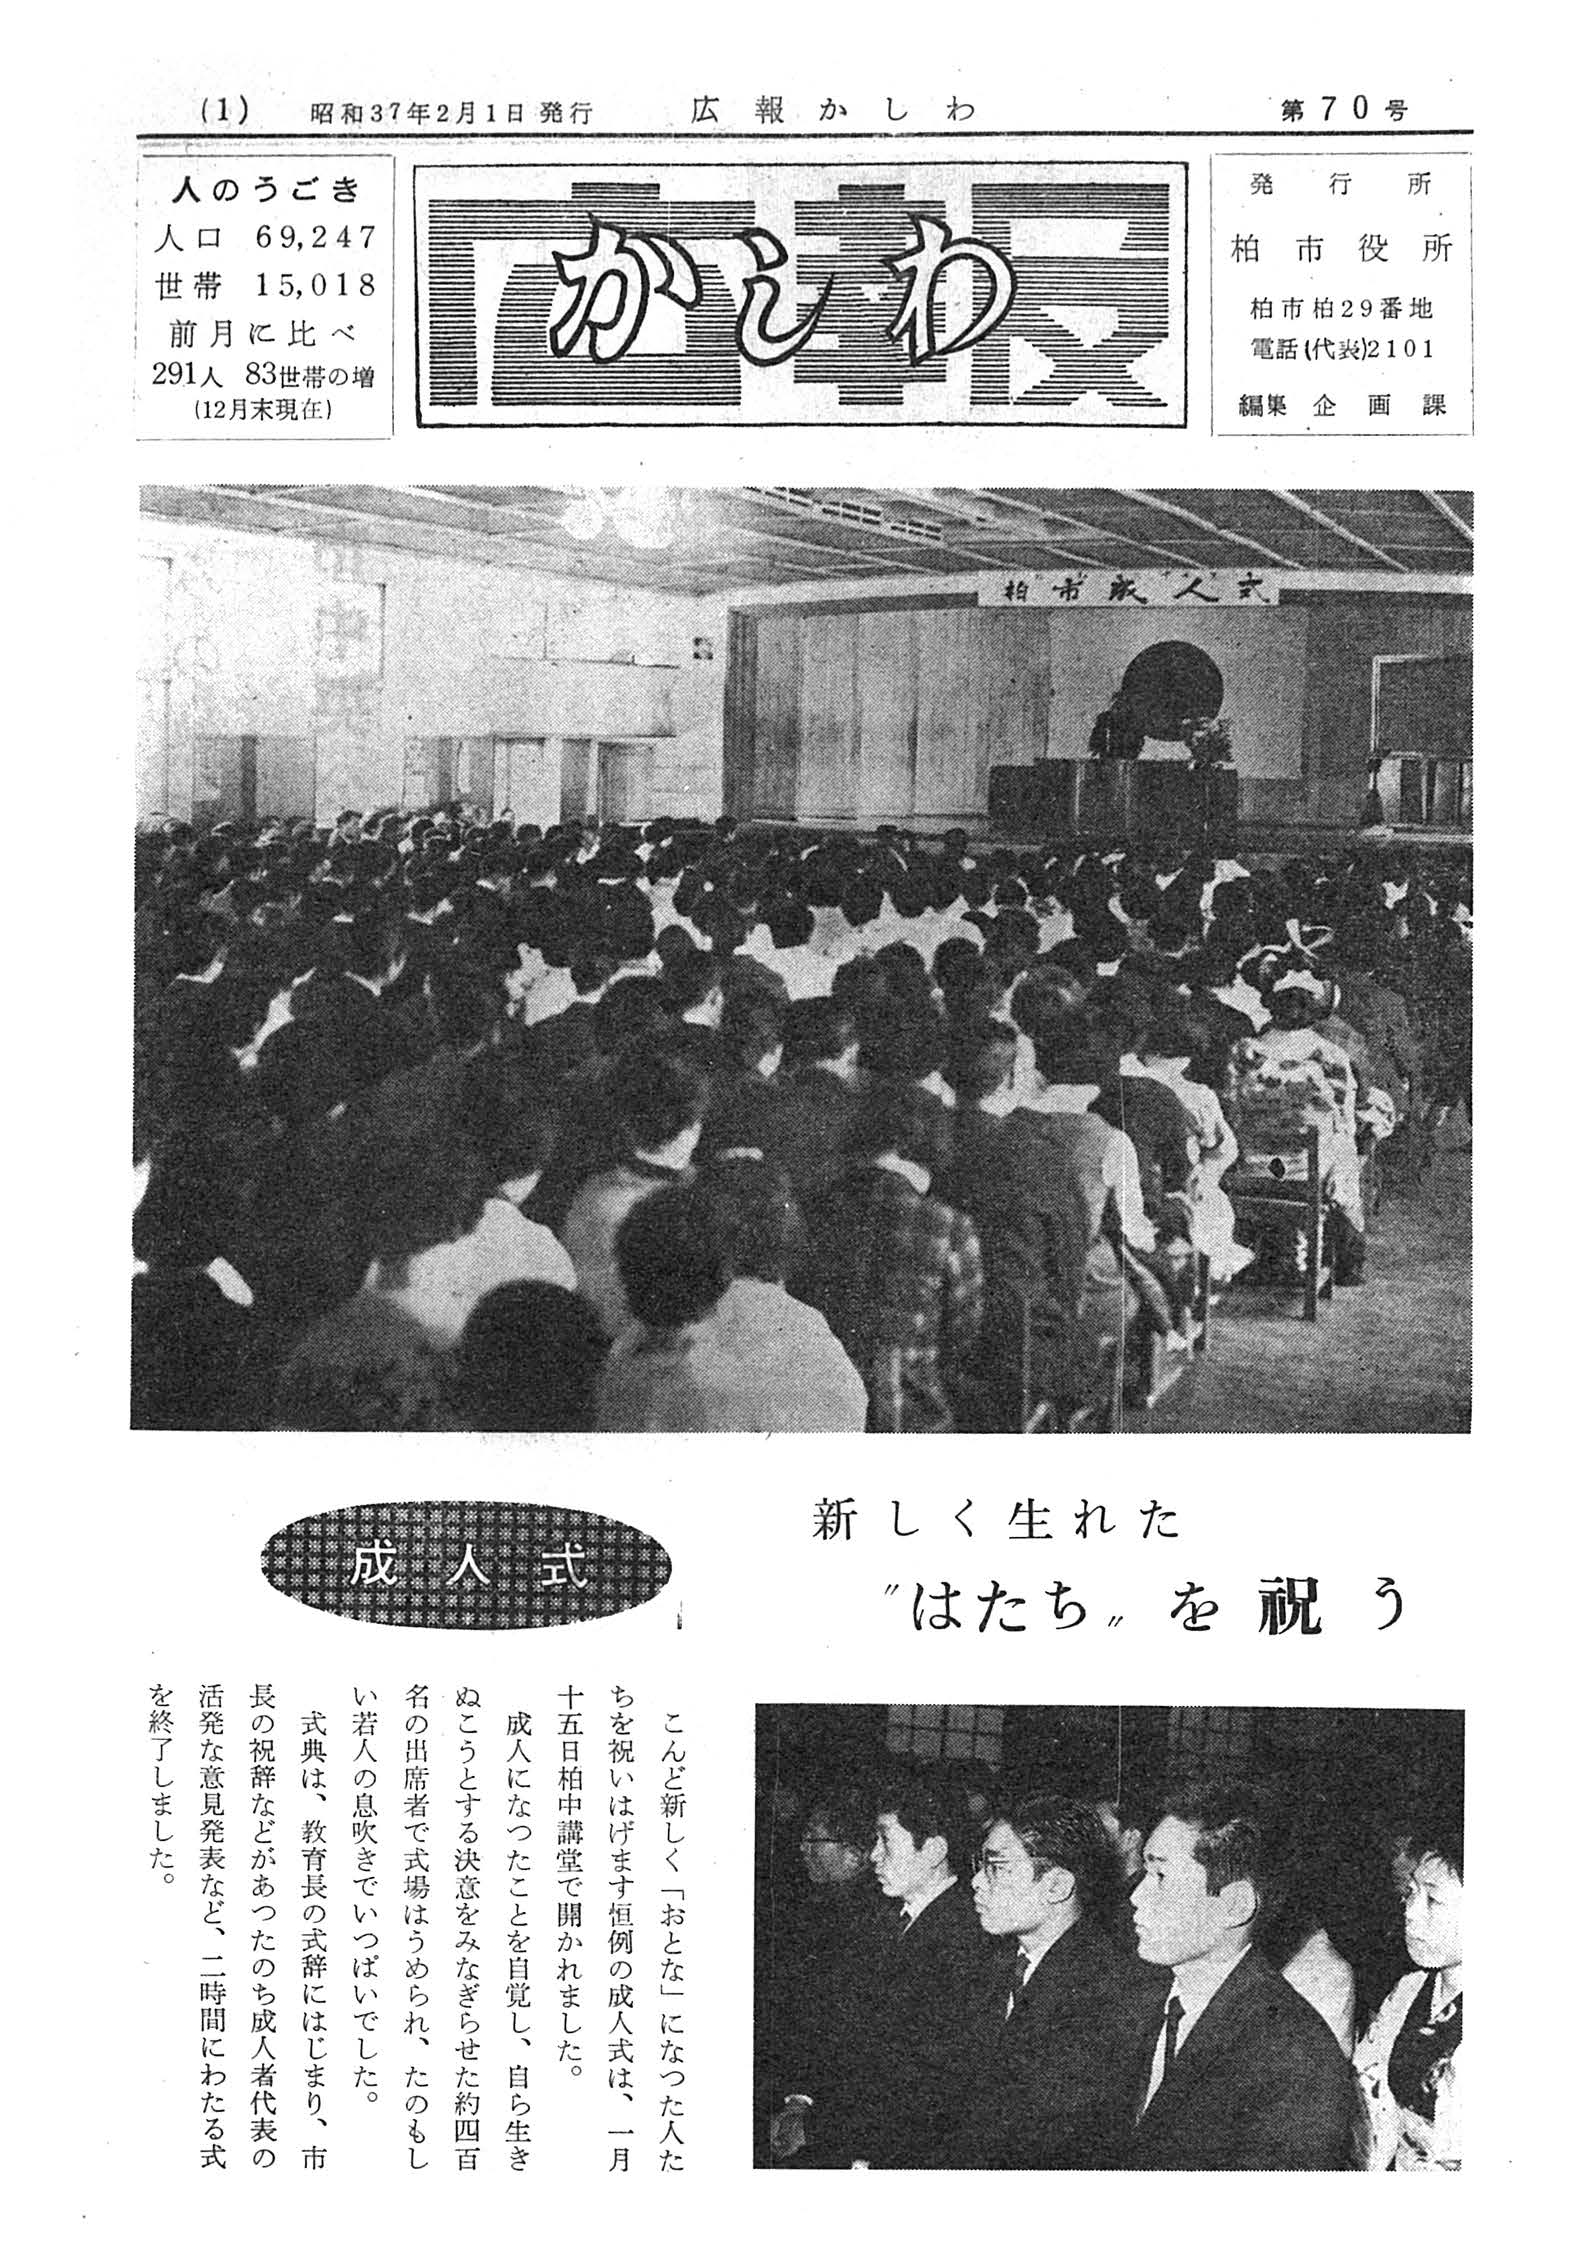 広報かしわ　昭和37年2月1日発行　70号